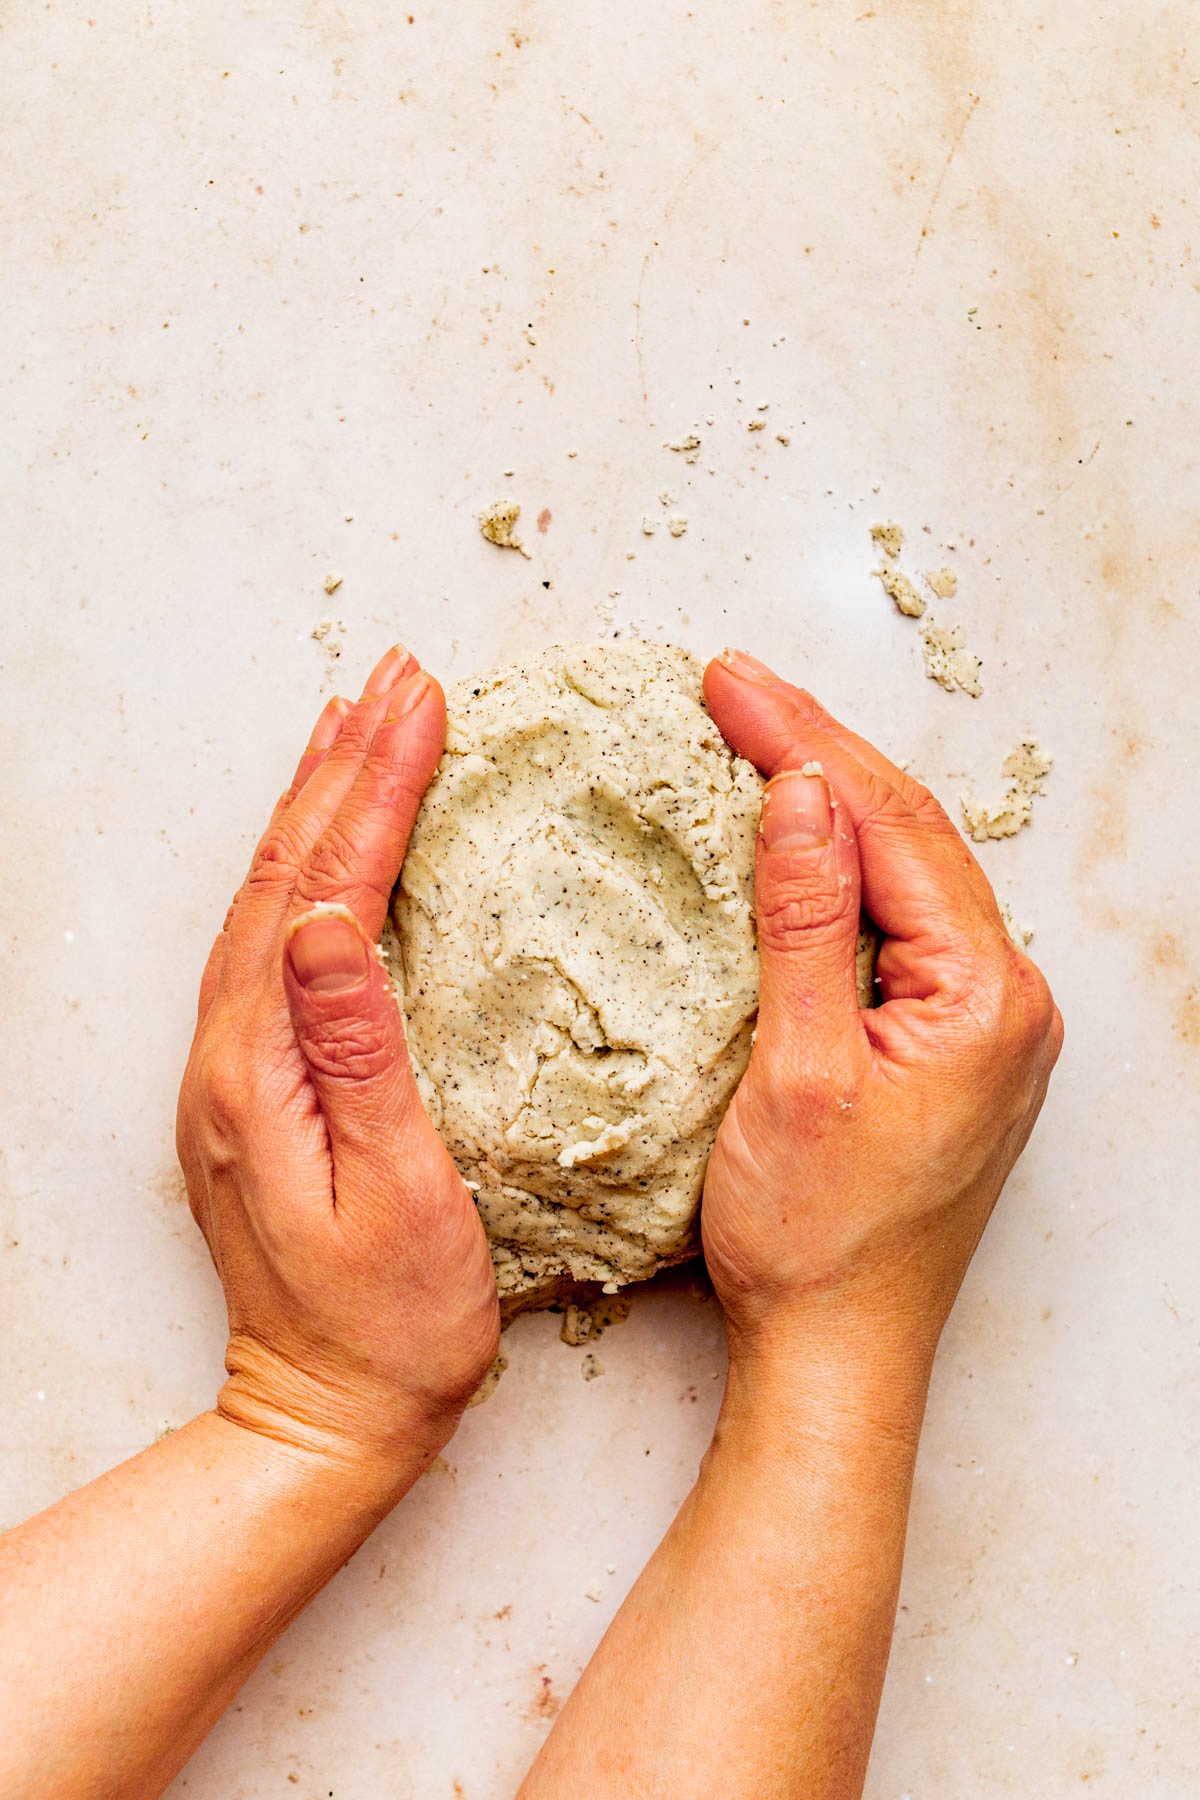 Shaping the dough into a rough ball.